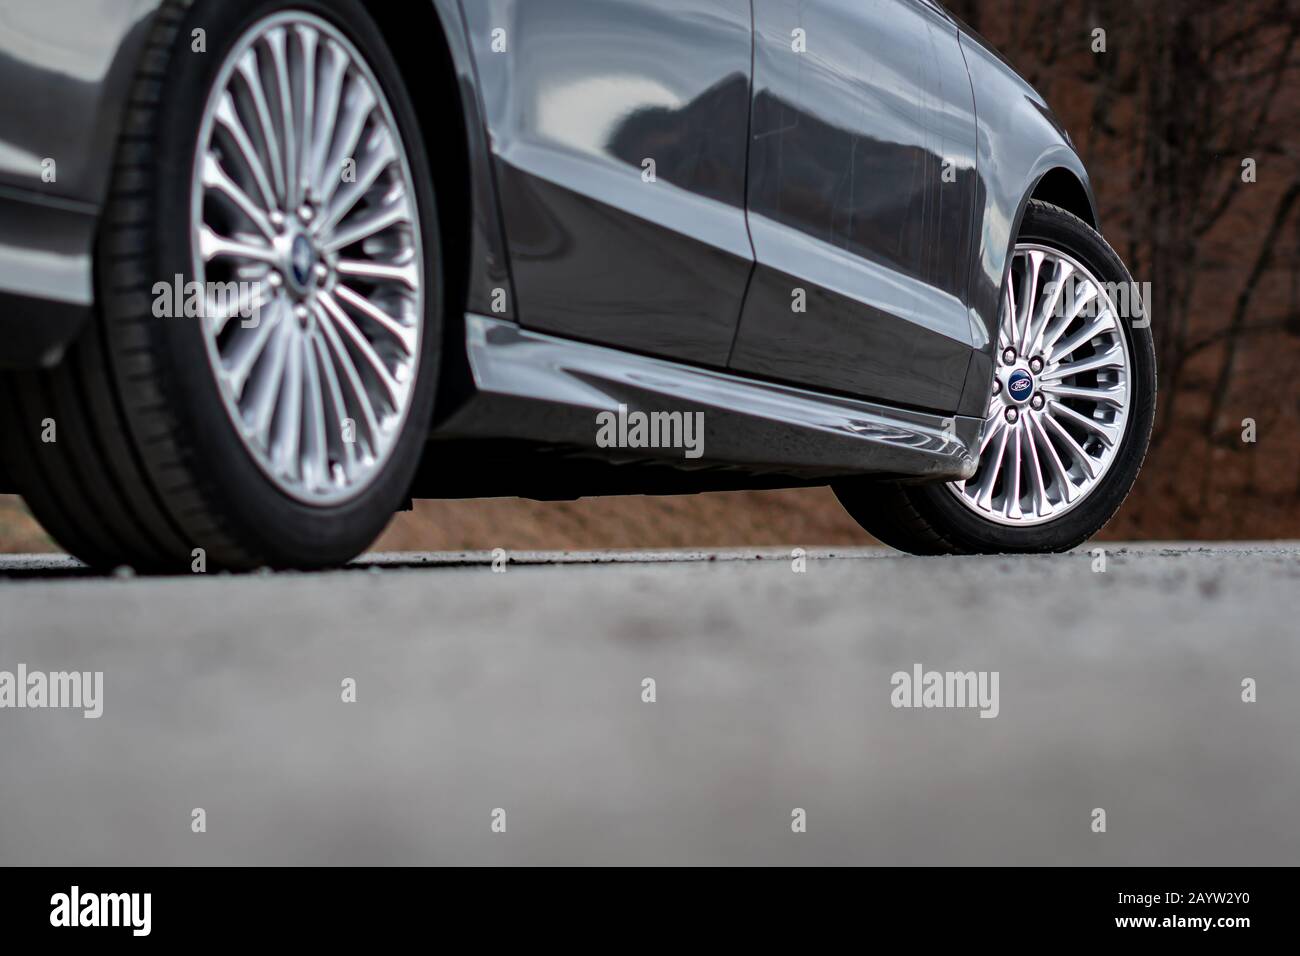 Cluj-Napoca, Cluj/Rumänien-01.31.2020-Ford Mondeo MK5 Sport Edition mit  dynamischen LED-Scheinwerfern, Sport Front Bumper,  18-Zoll-Leichtmetallfelgen, Aston Martin Stockfotografie - Alamy